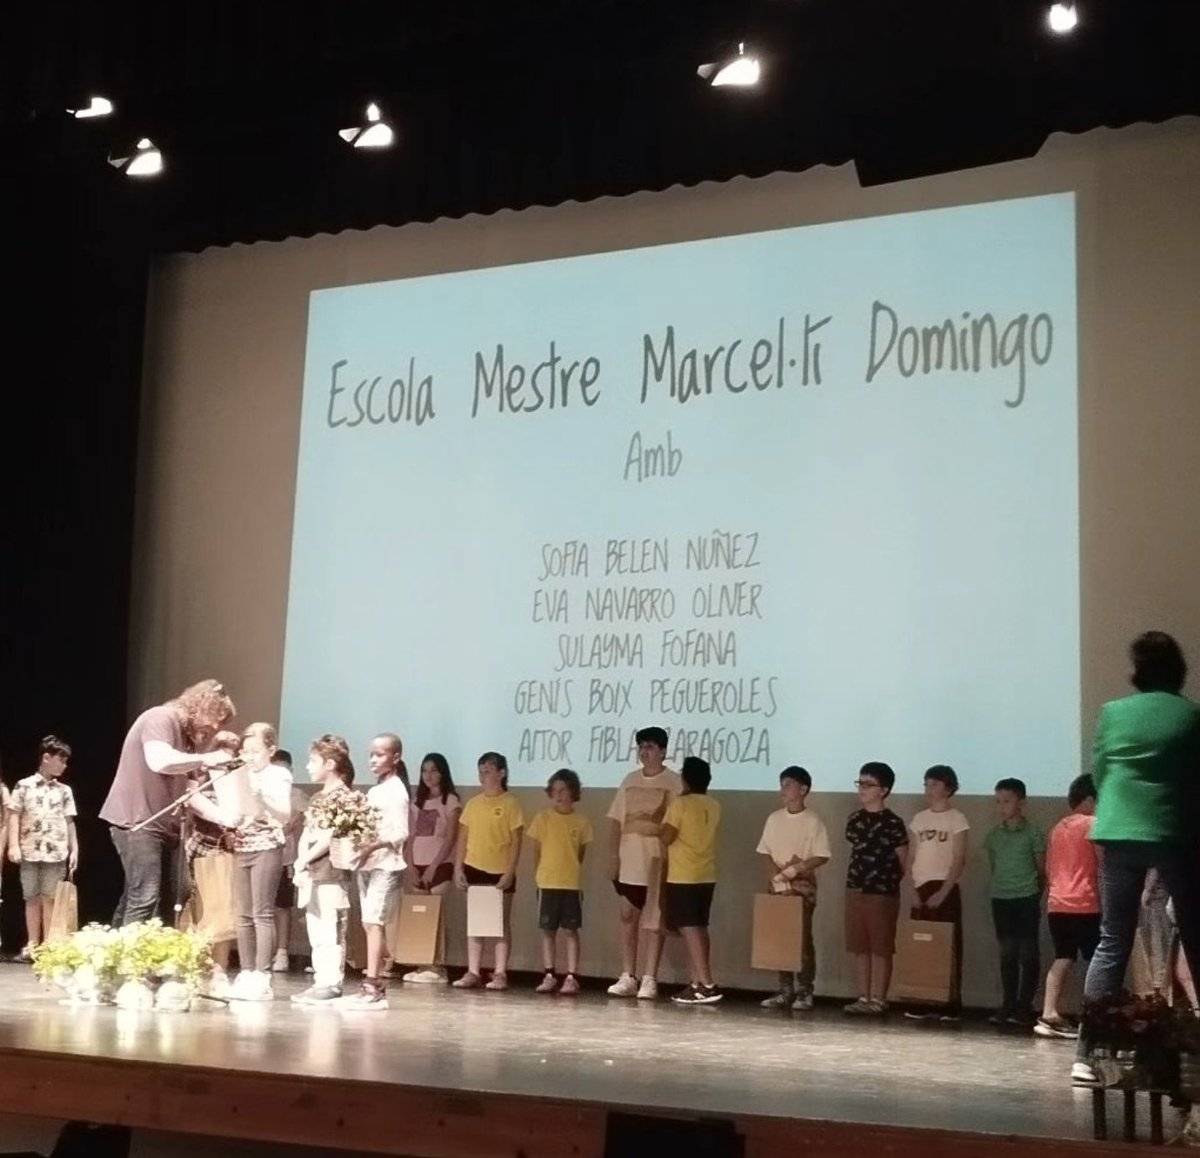 👩🏻‍🏫 𝗘𝗗𝗨𝗖𝗔𝗖𝗜𝗢́ | L'Escola Mestre Marcel·lí Domingo de #Roquetes, premi als #JocsFloralsEscolars 💐

🏆 L'alumnat de tercer guanya el concurs a les #TerresdelEbre en categoria B2 de #poesia, amb l'obra '𝘖𝘭𝘪́𝘮𝘱𝘪𝘢𝘥𝘦𝘴'

🤗 FELICITATS A TOTS I TOTES❗️

#OrgullRoquetenc